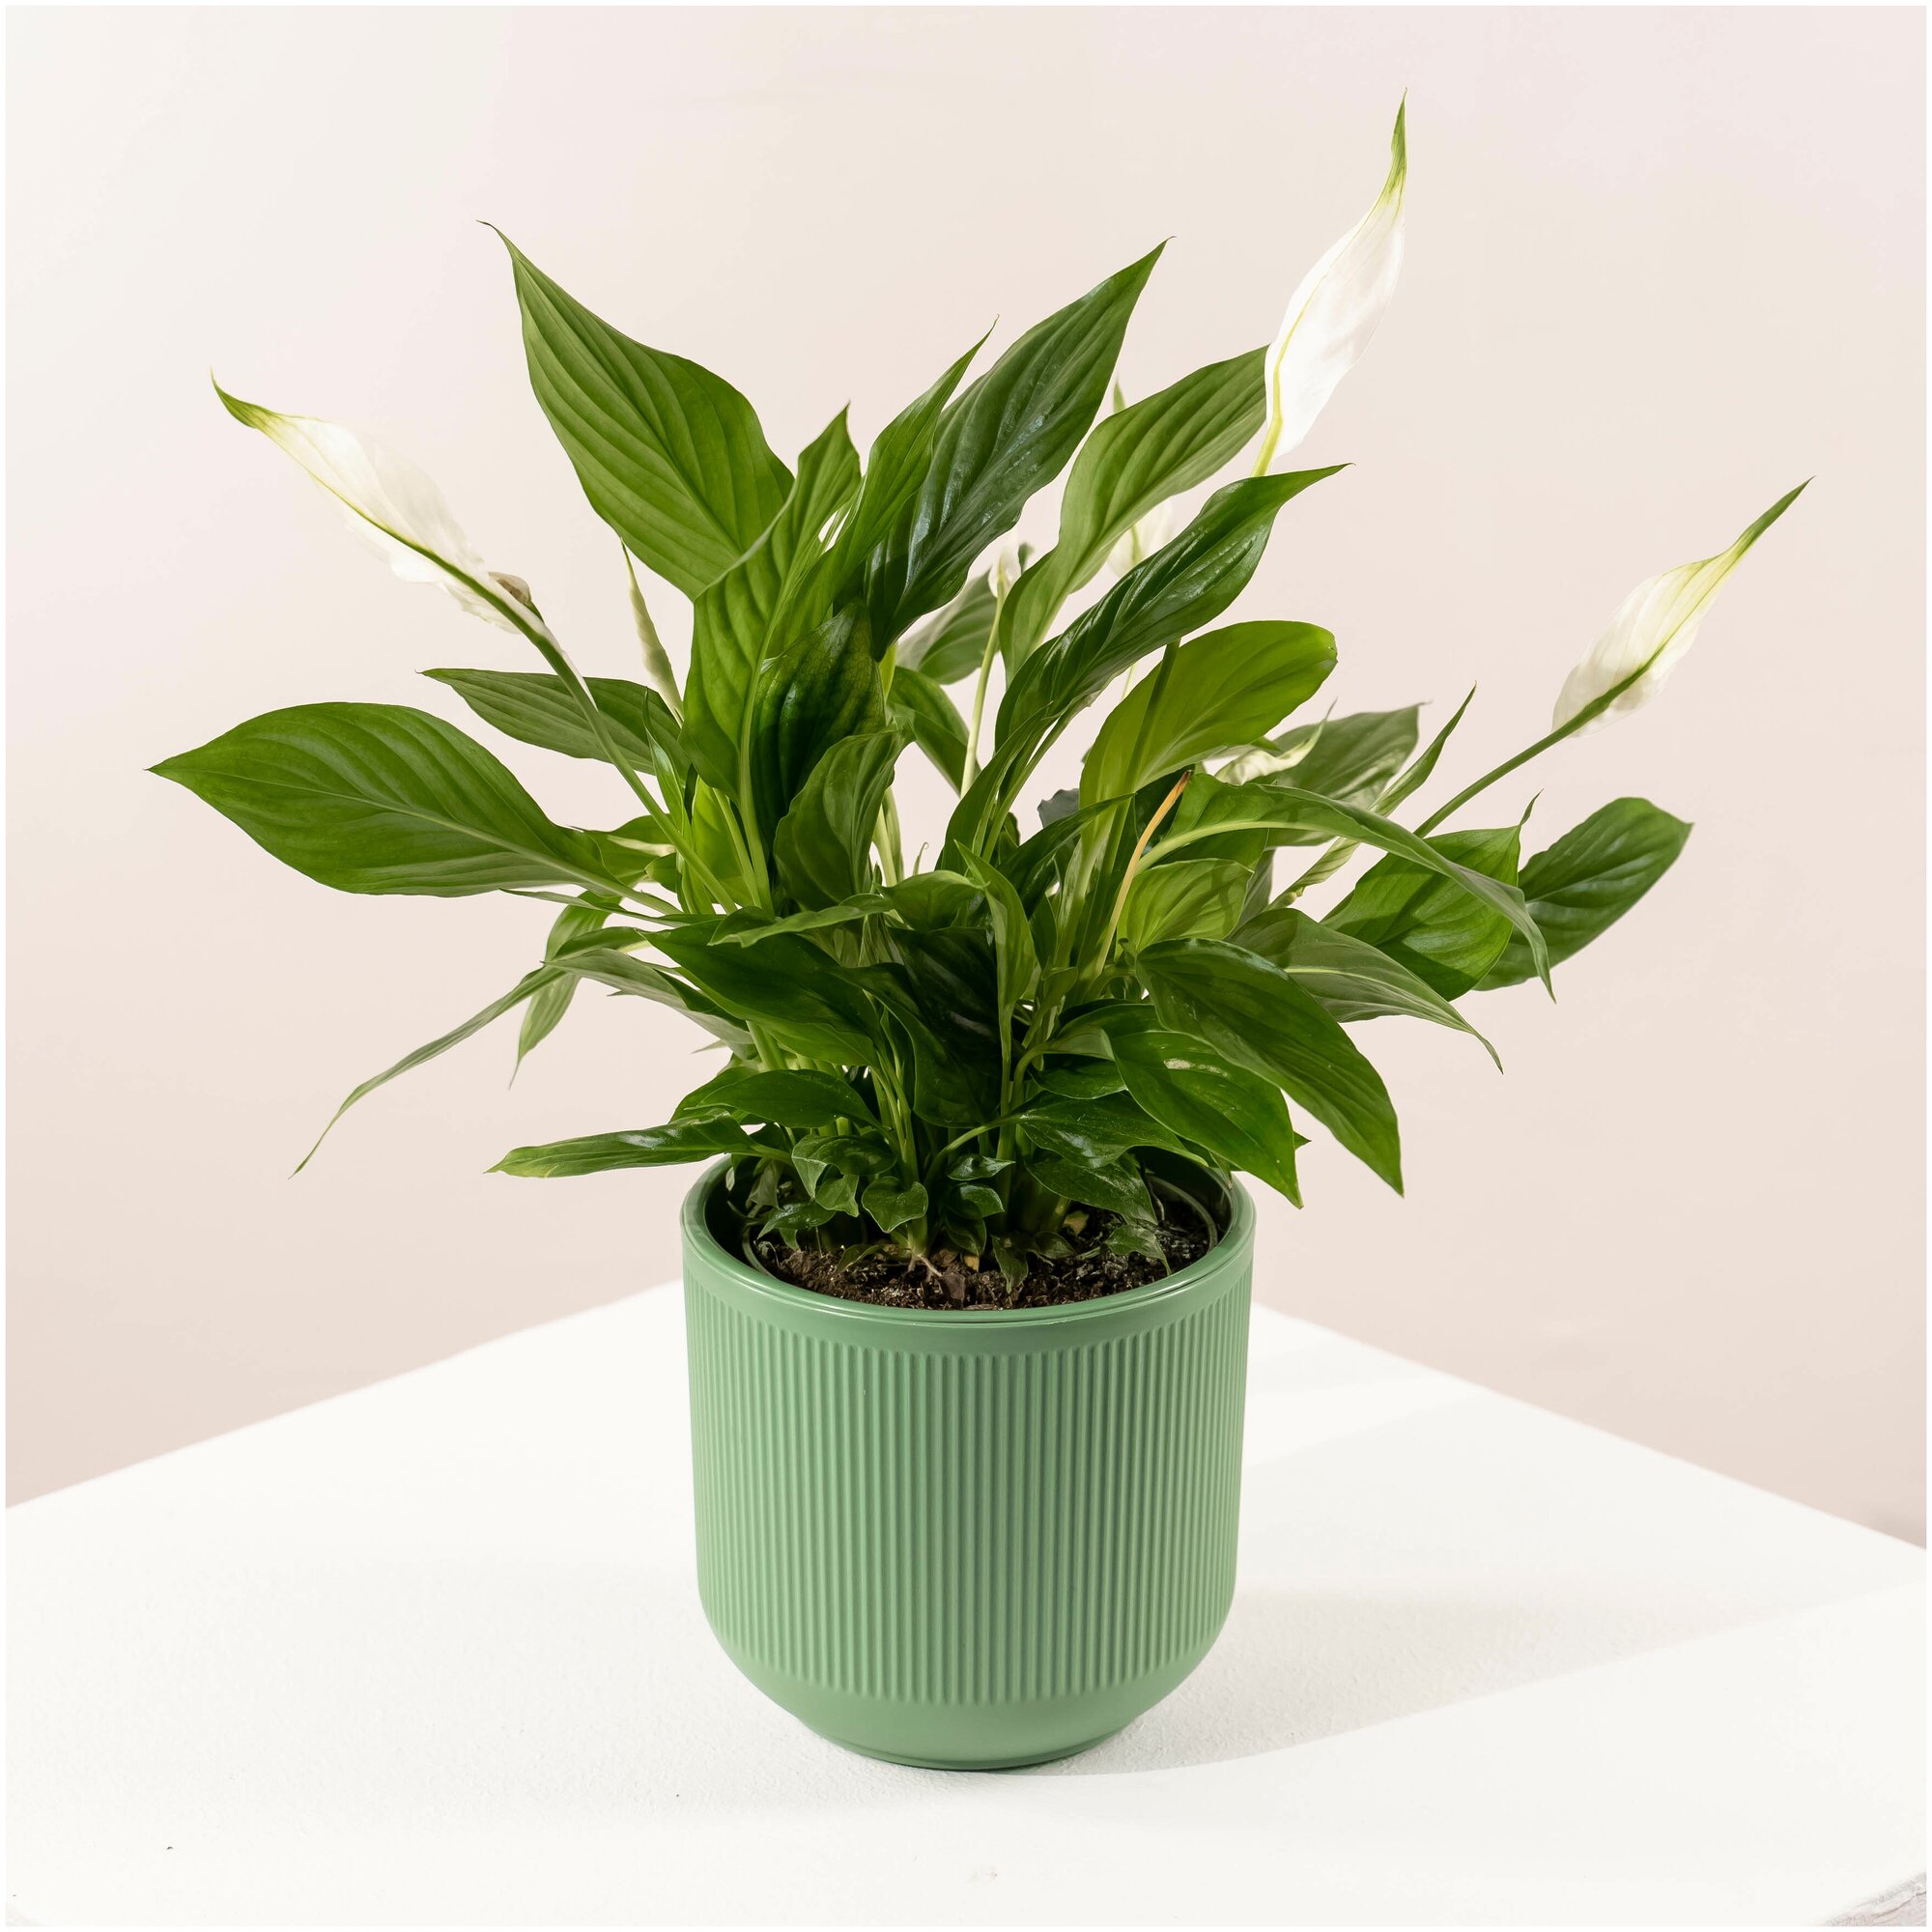 Комнатное растение спатифиллум в стильном горшке из пластика, высота 40 см